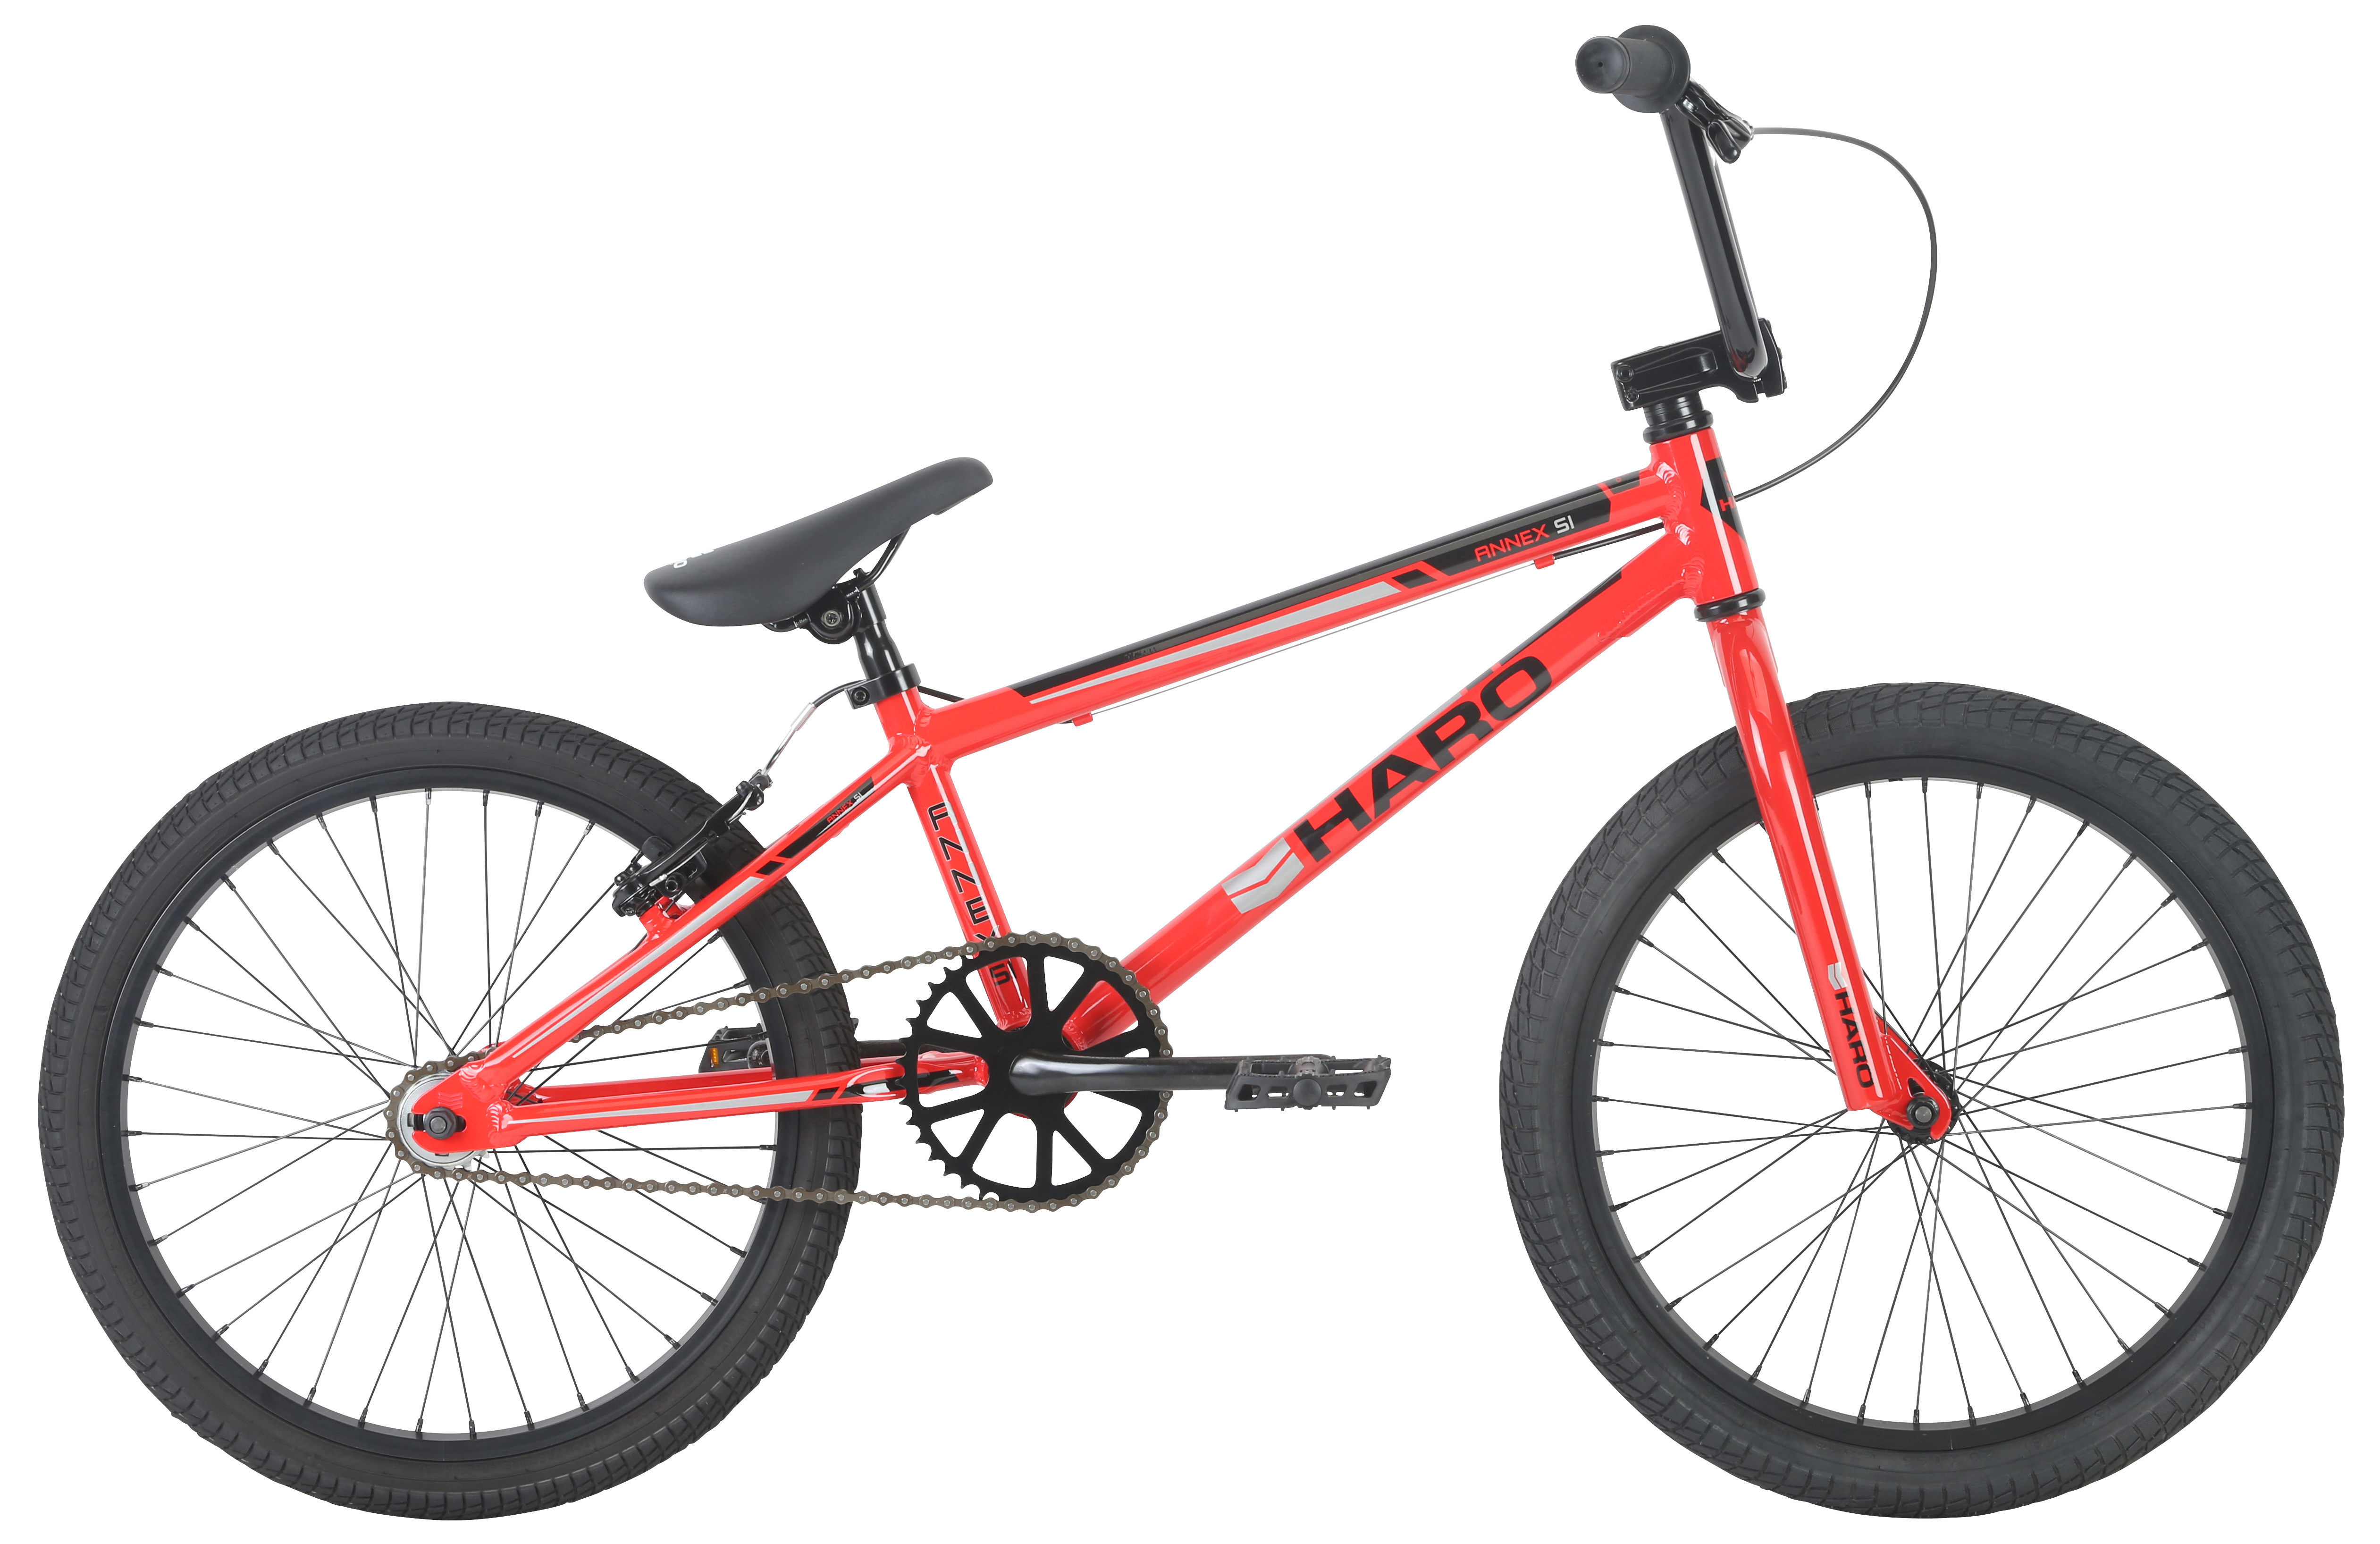  Велосипед Haro Annex Si Alloy 2019